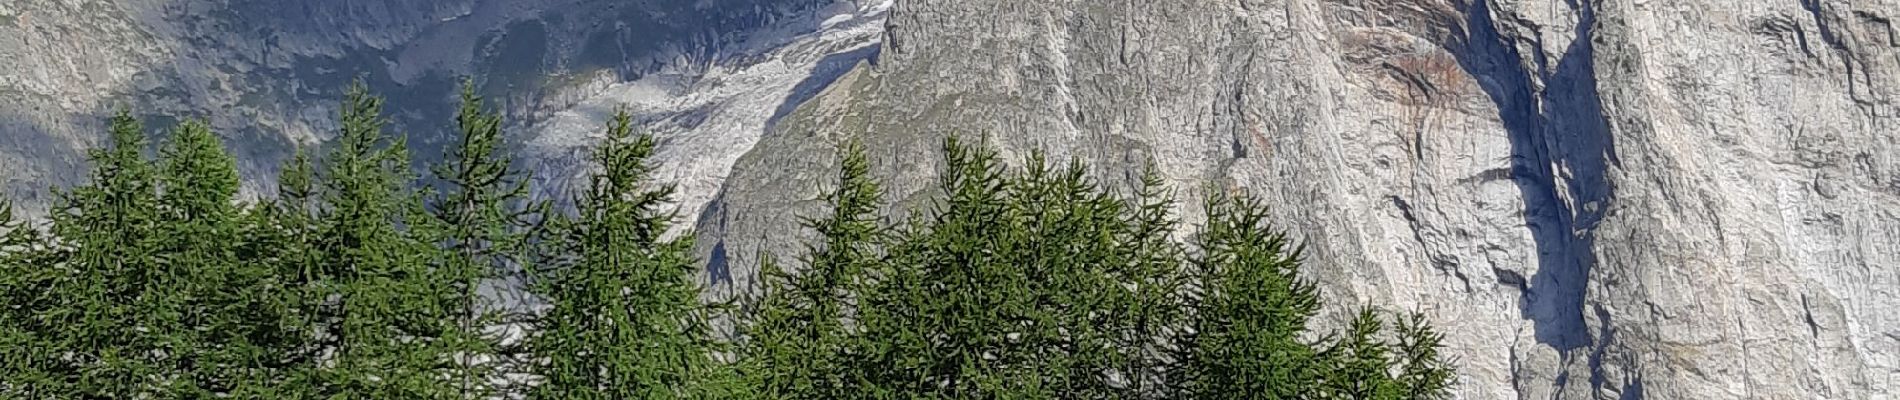 Randonnée Marche Courmayeur - étape monte Bianco mottets - Photo